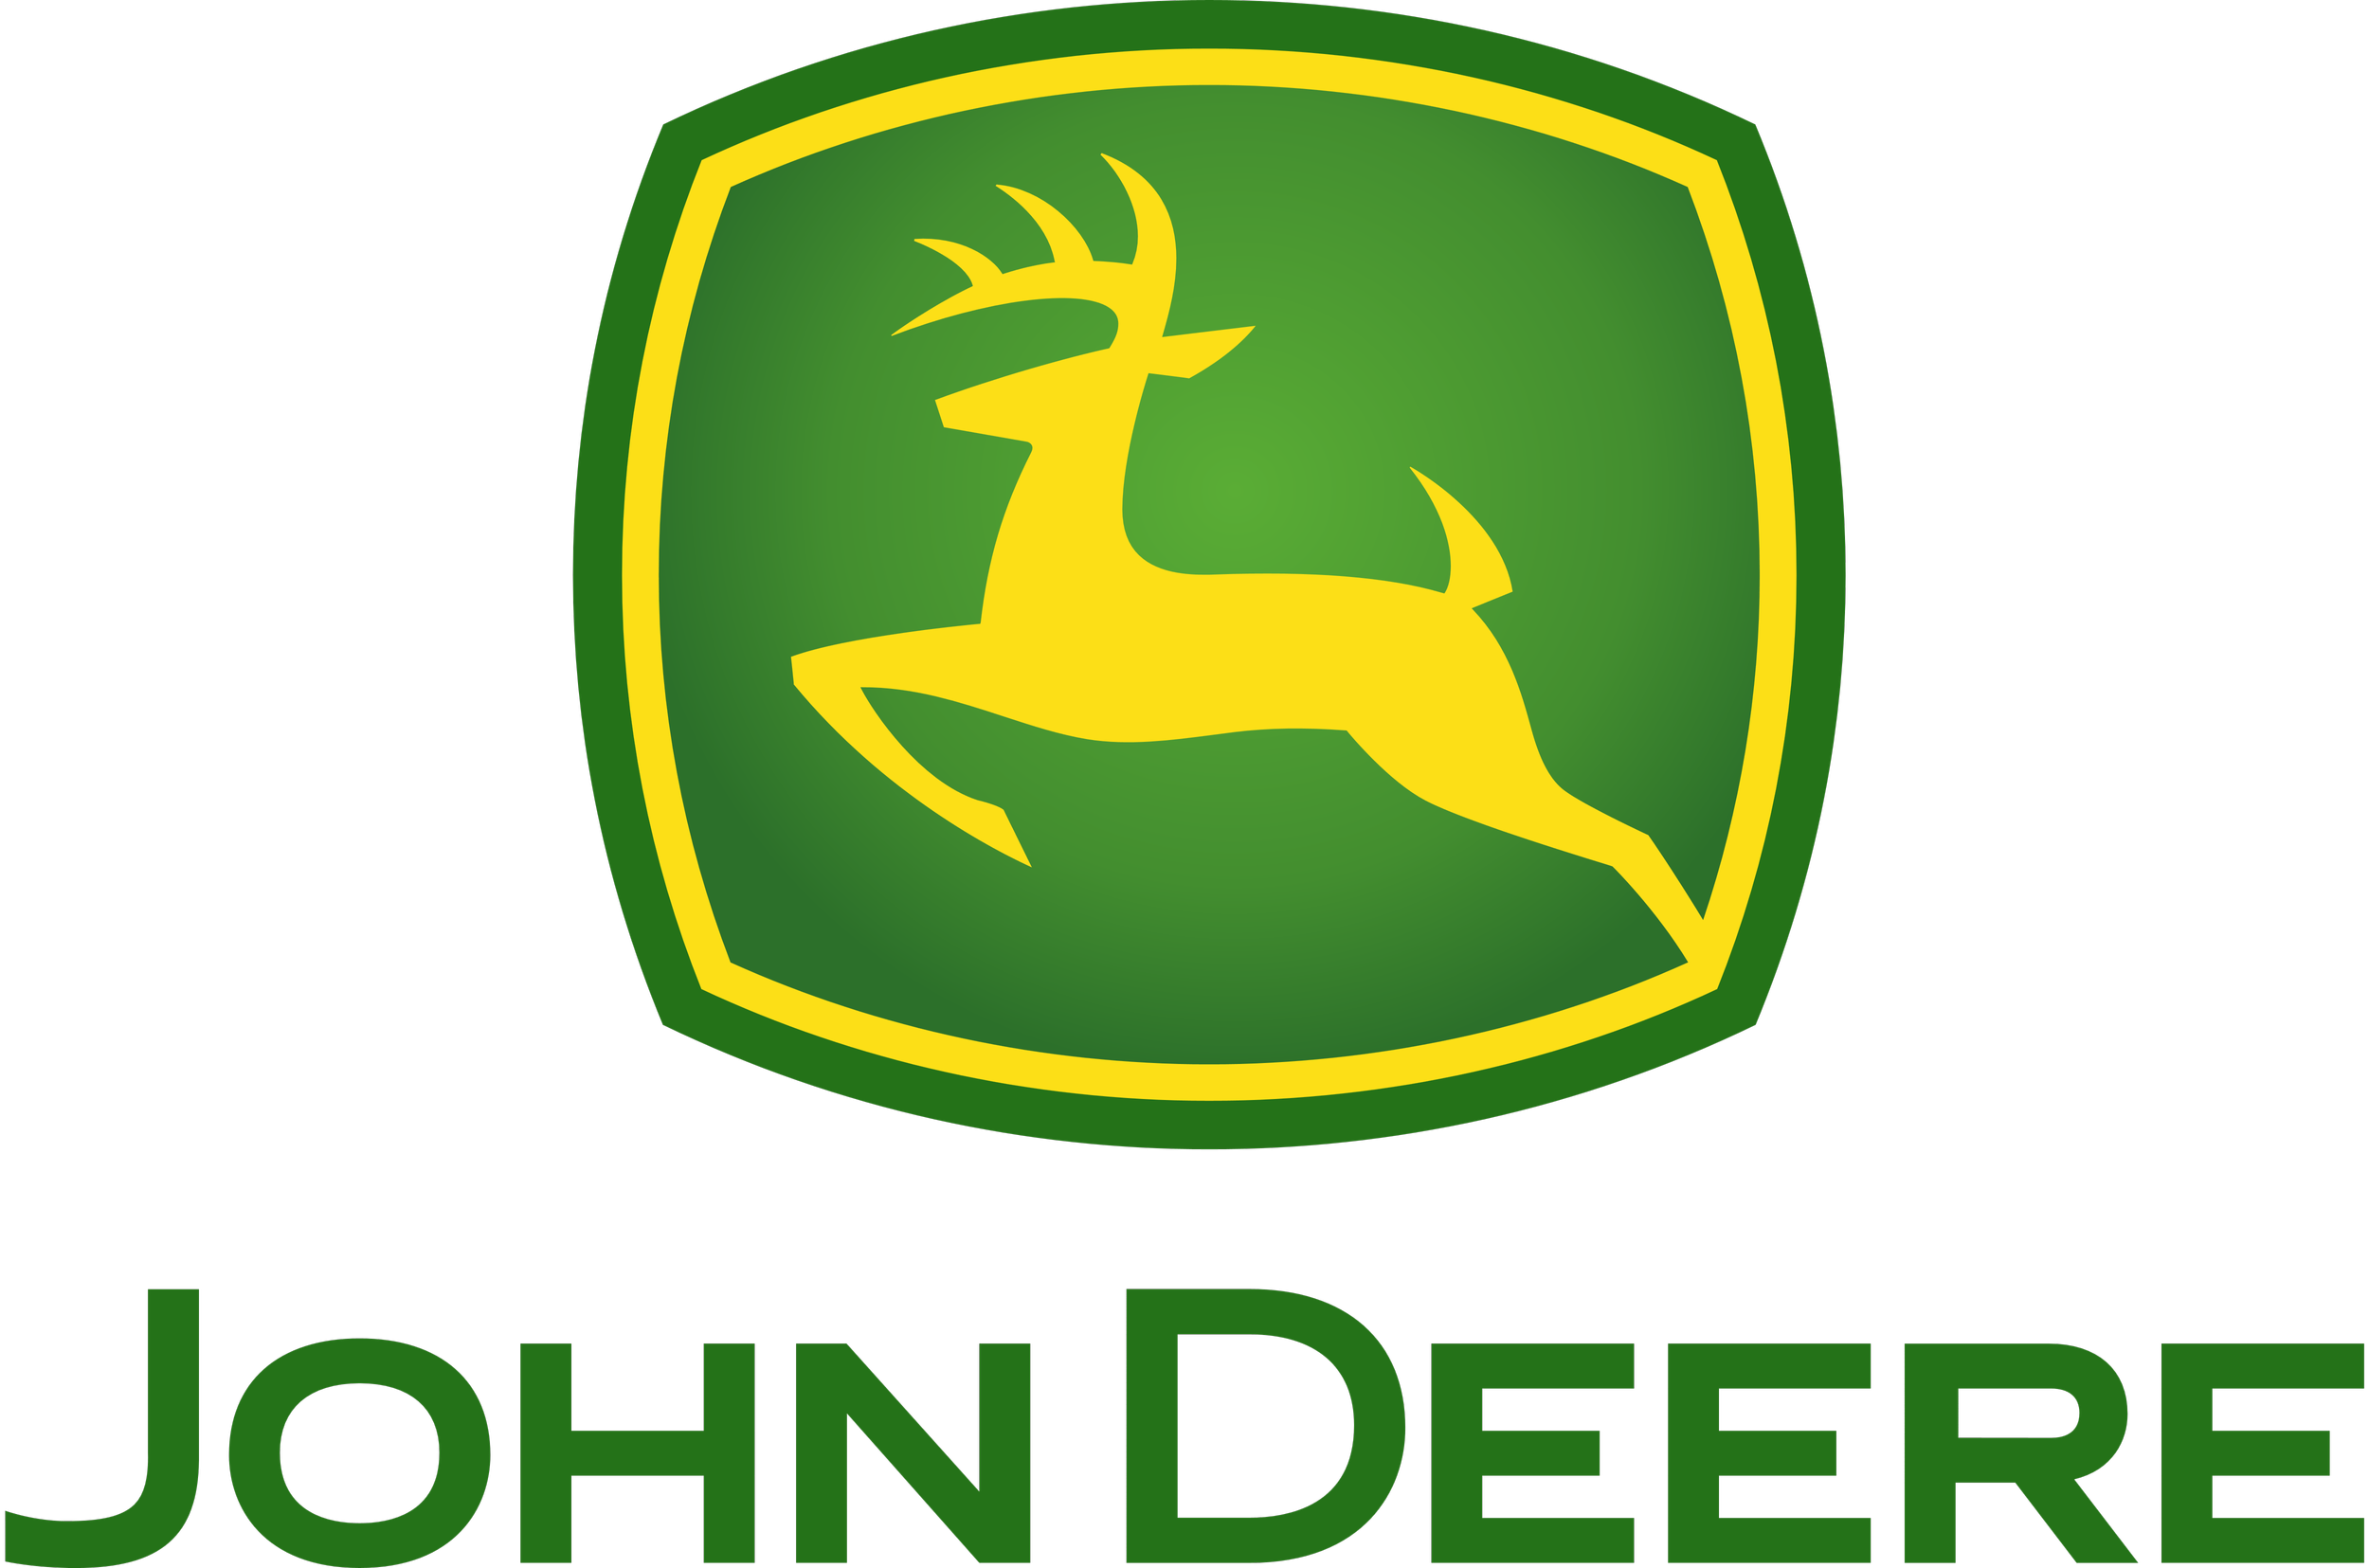 John_Deere_logo_emblem_symbol-2362036580.png